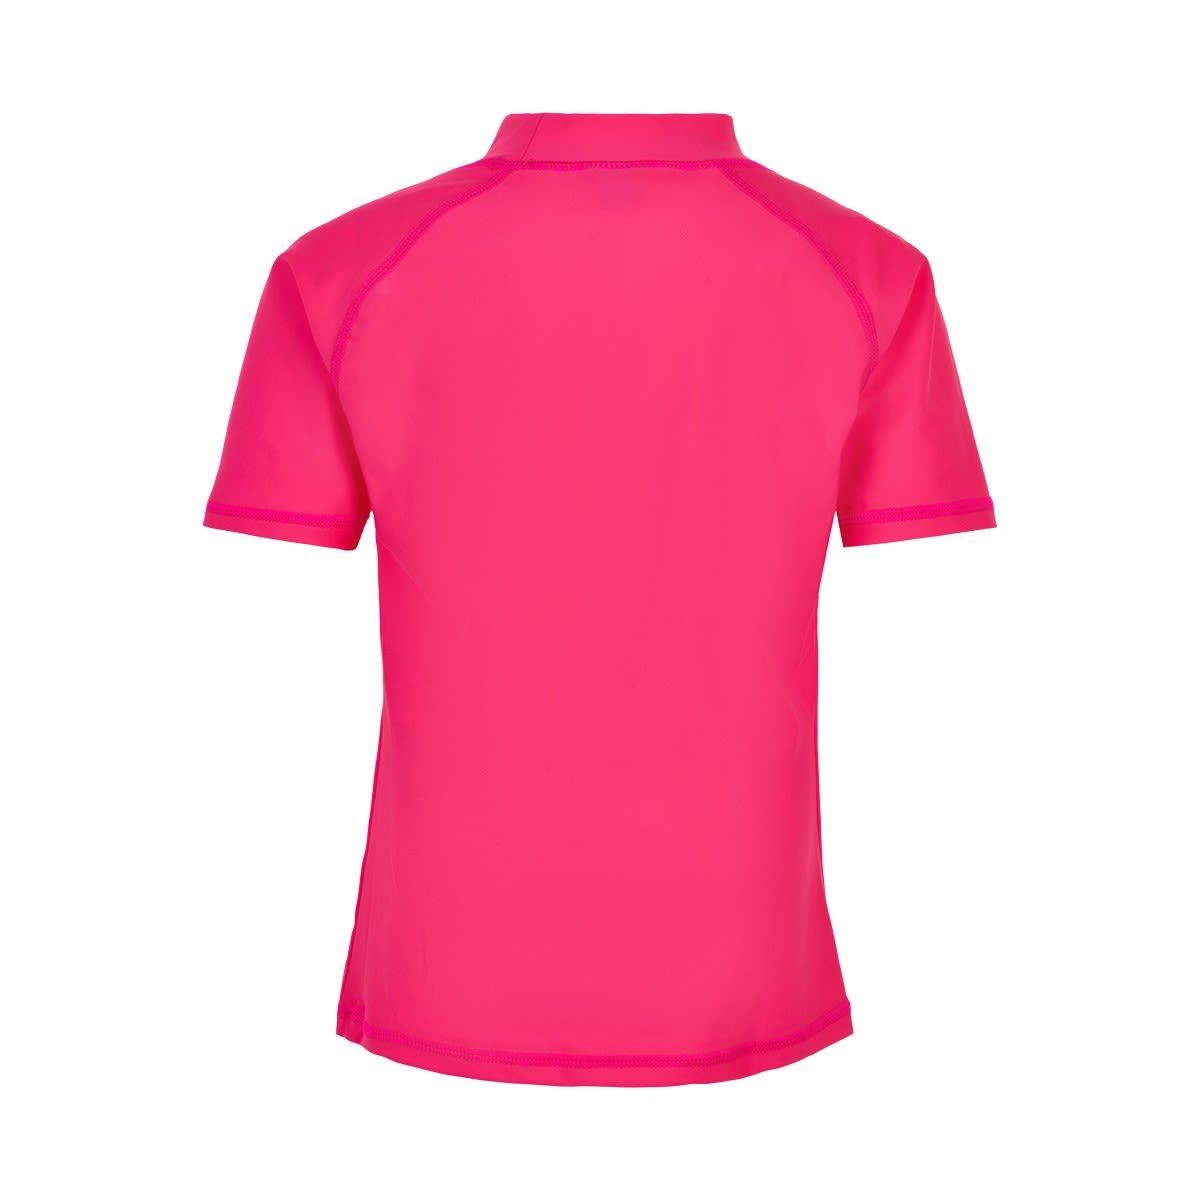 Color Solid Badeanzug Kids Oberteil Kinder T-shirt Yarrow Kids KIDS Pink COLOR